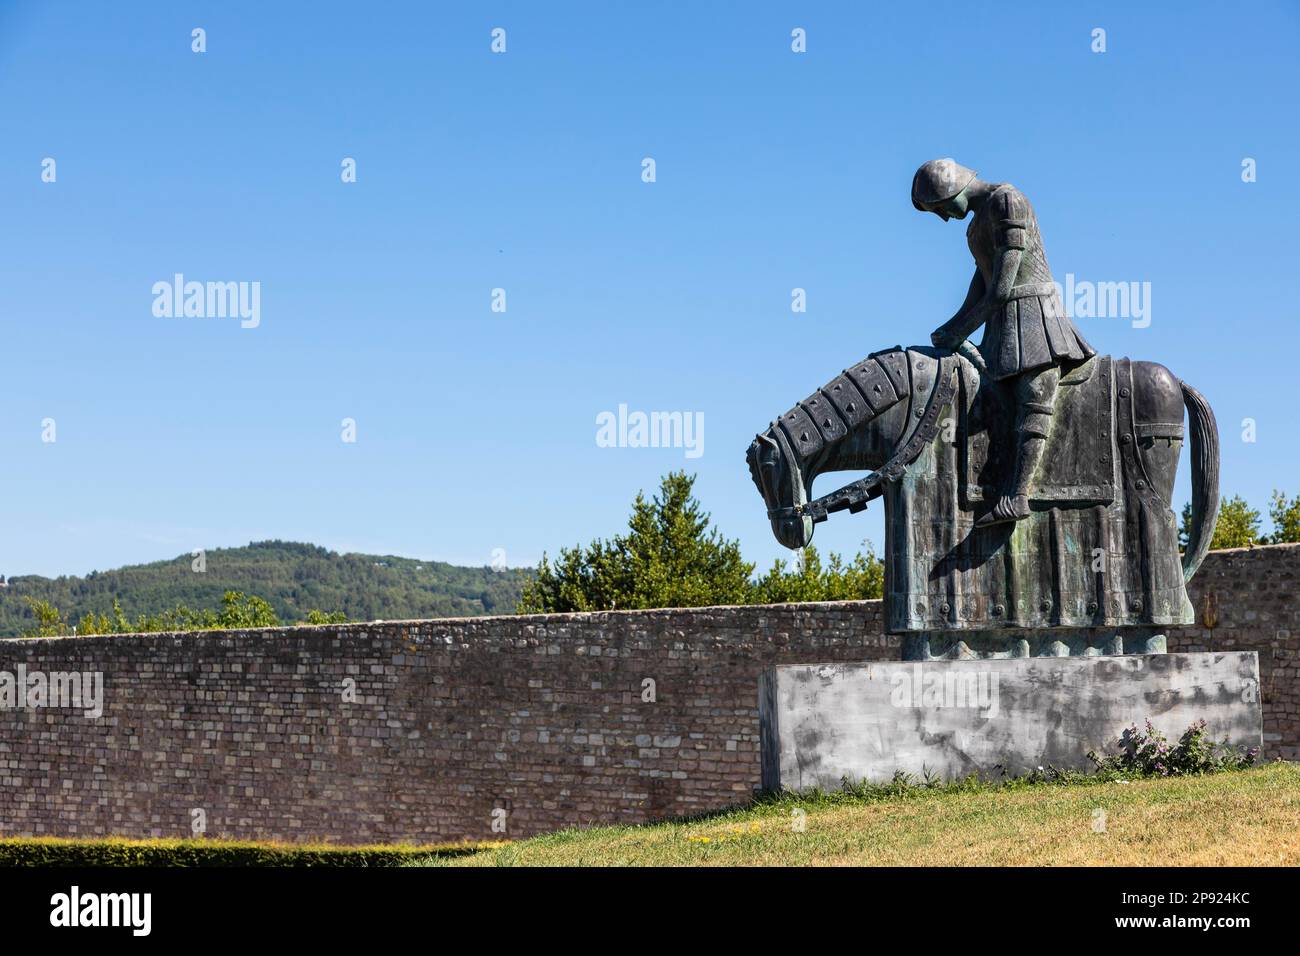 Assisi villaggio in Umbria, Italia. Statua di San Francesco. La città è famosa per la più importante St Basilica di Francesco (Basilica di Foto Stock